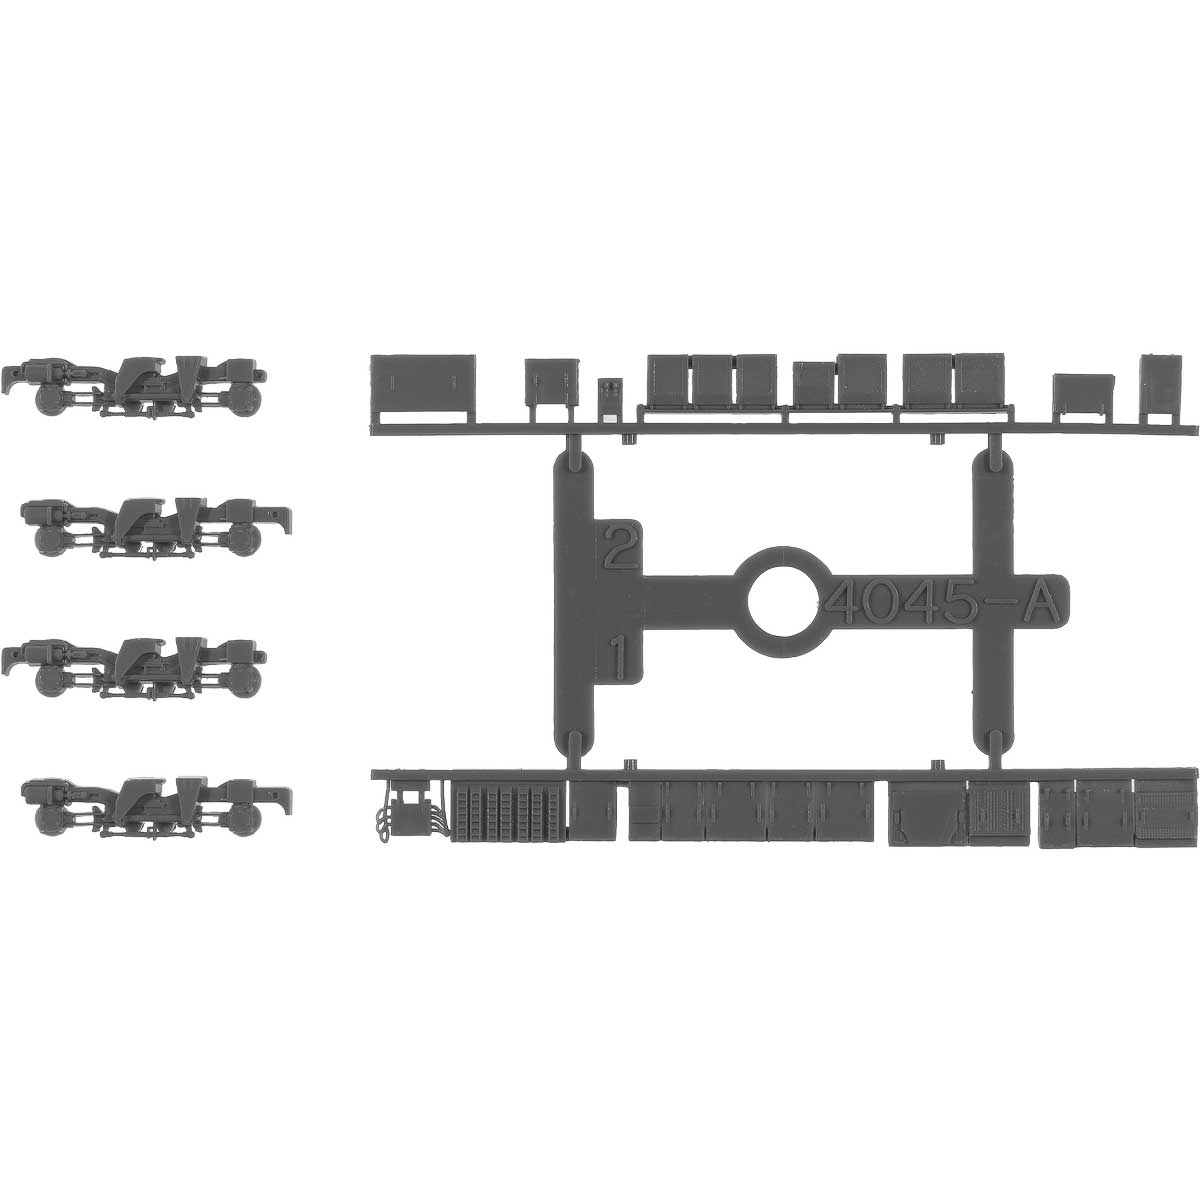 動力台車枠・床下機器セット A-20（FS539＋4045AM）